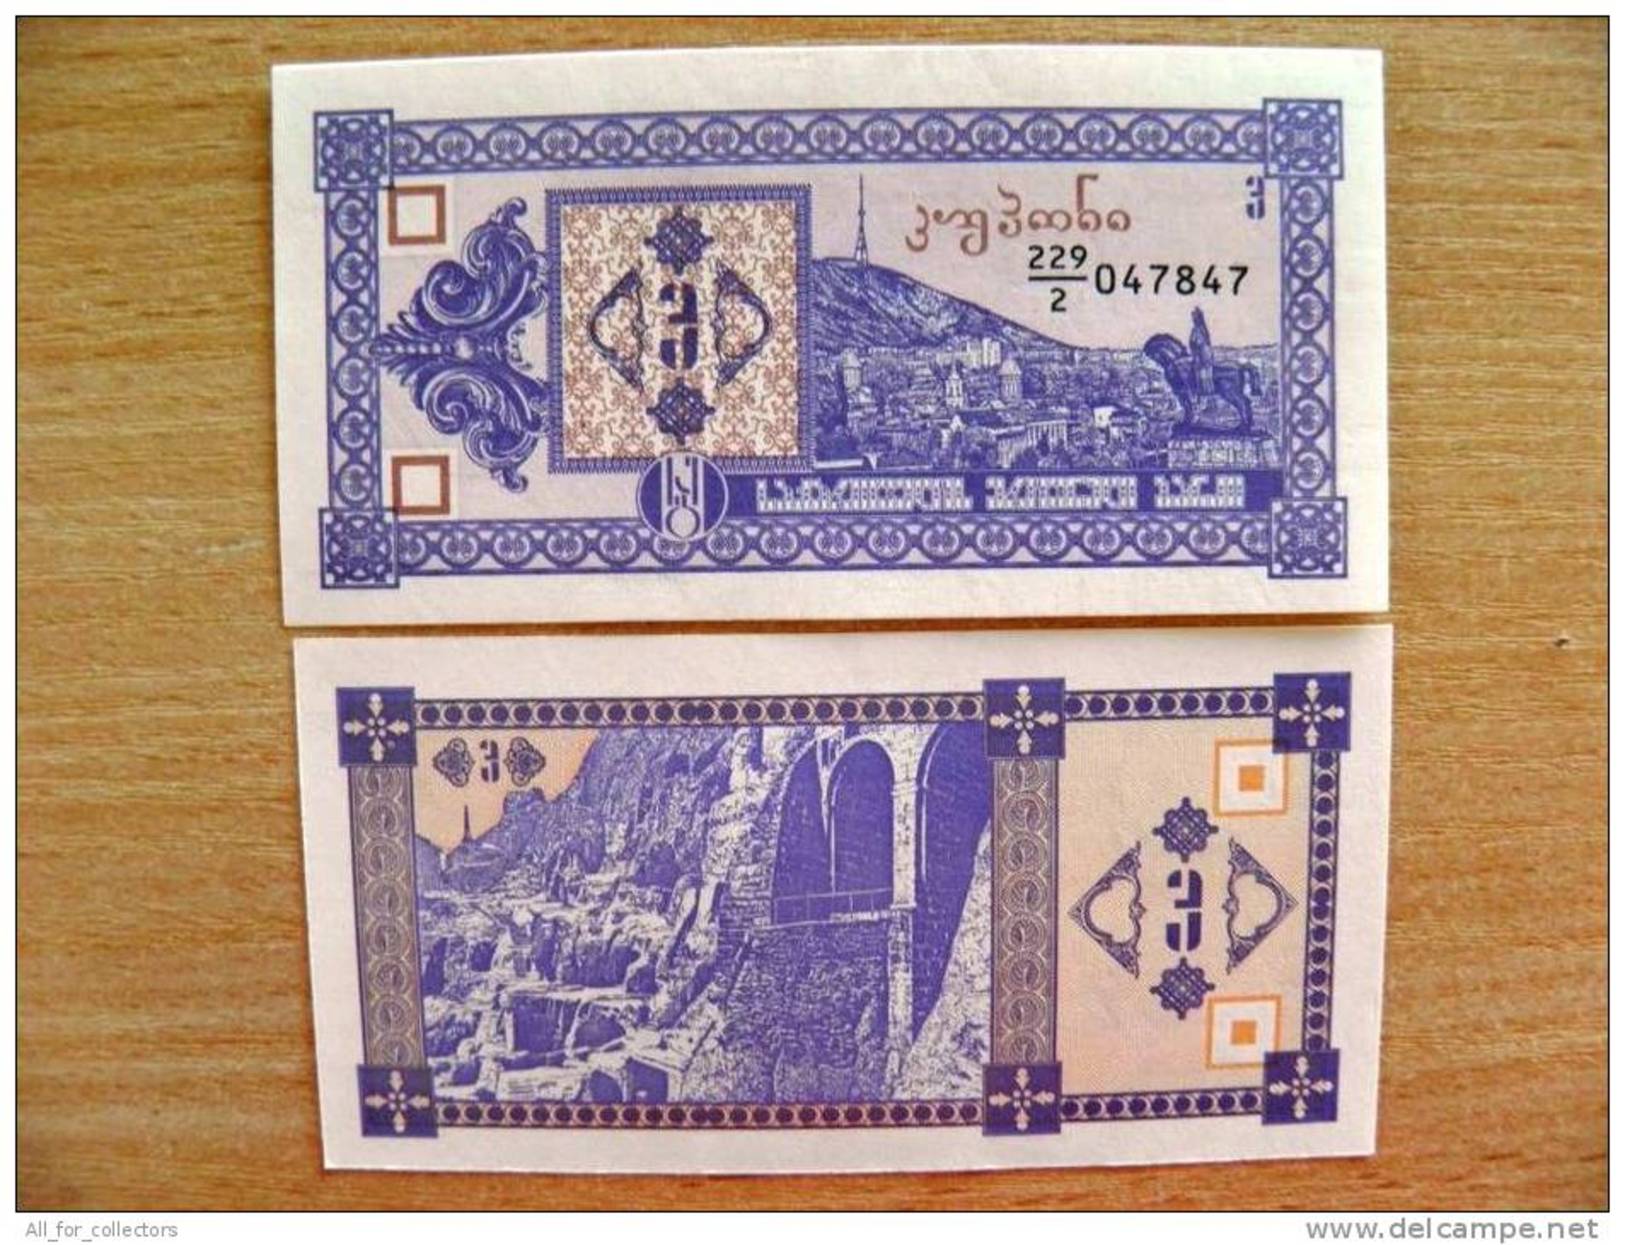 UNC Banknote From Georgia 1993 Pick #34, 3 Laris - Georgia